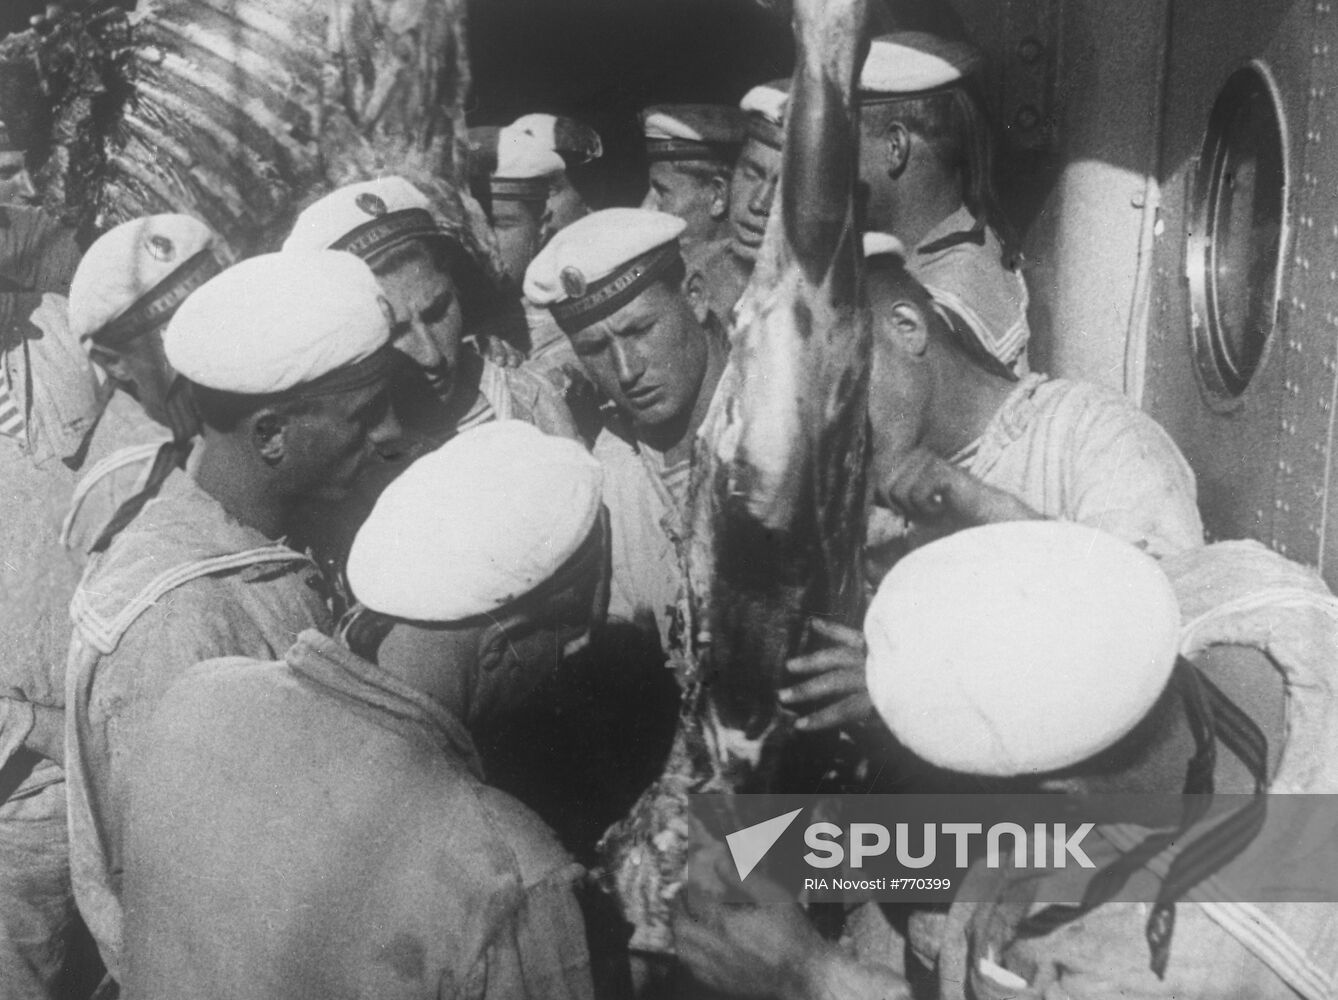 Still from film "Battleship Potemkin"